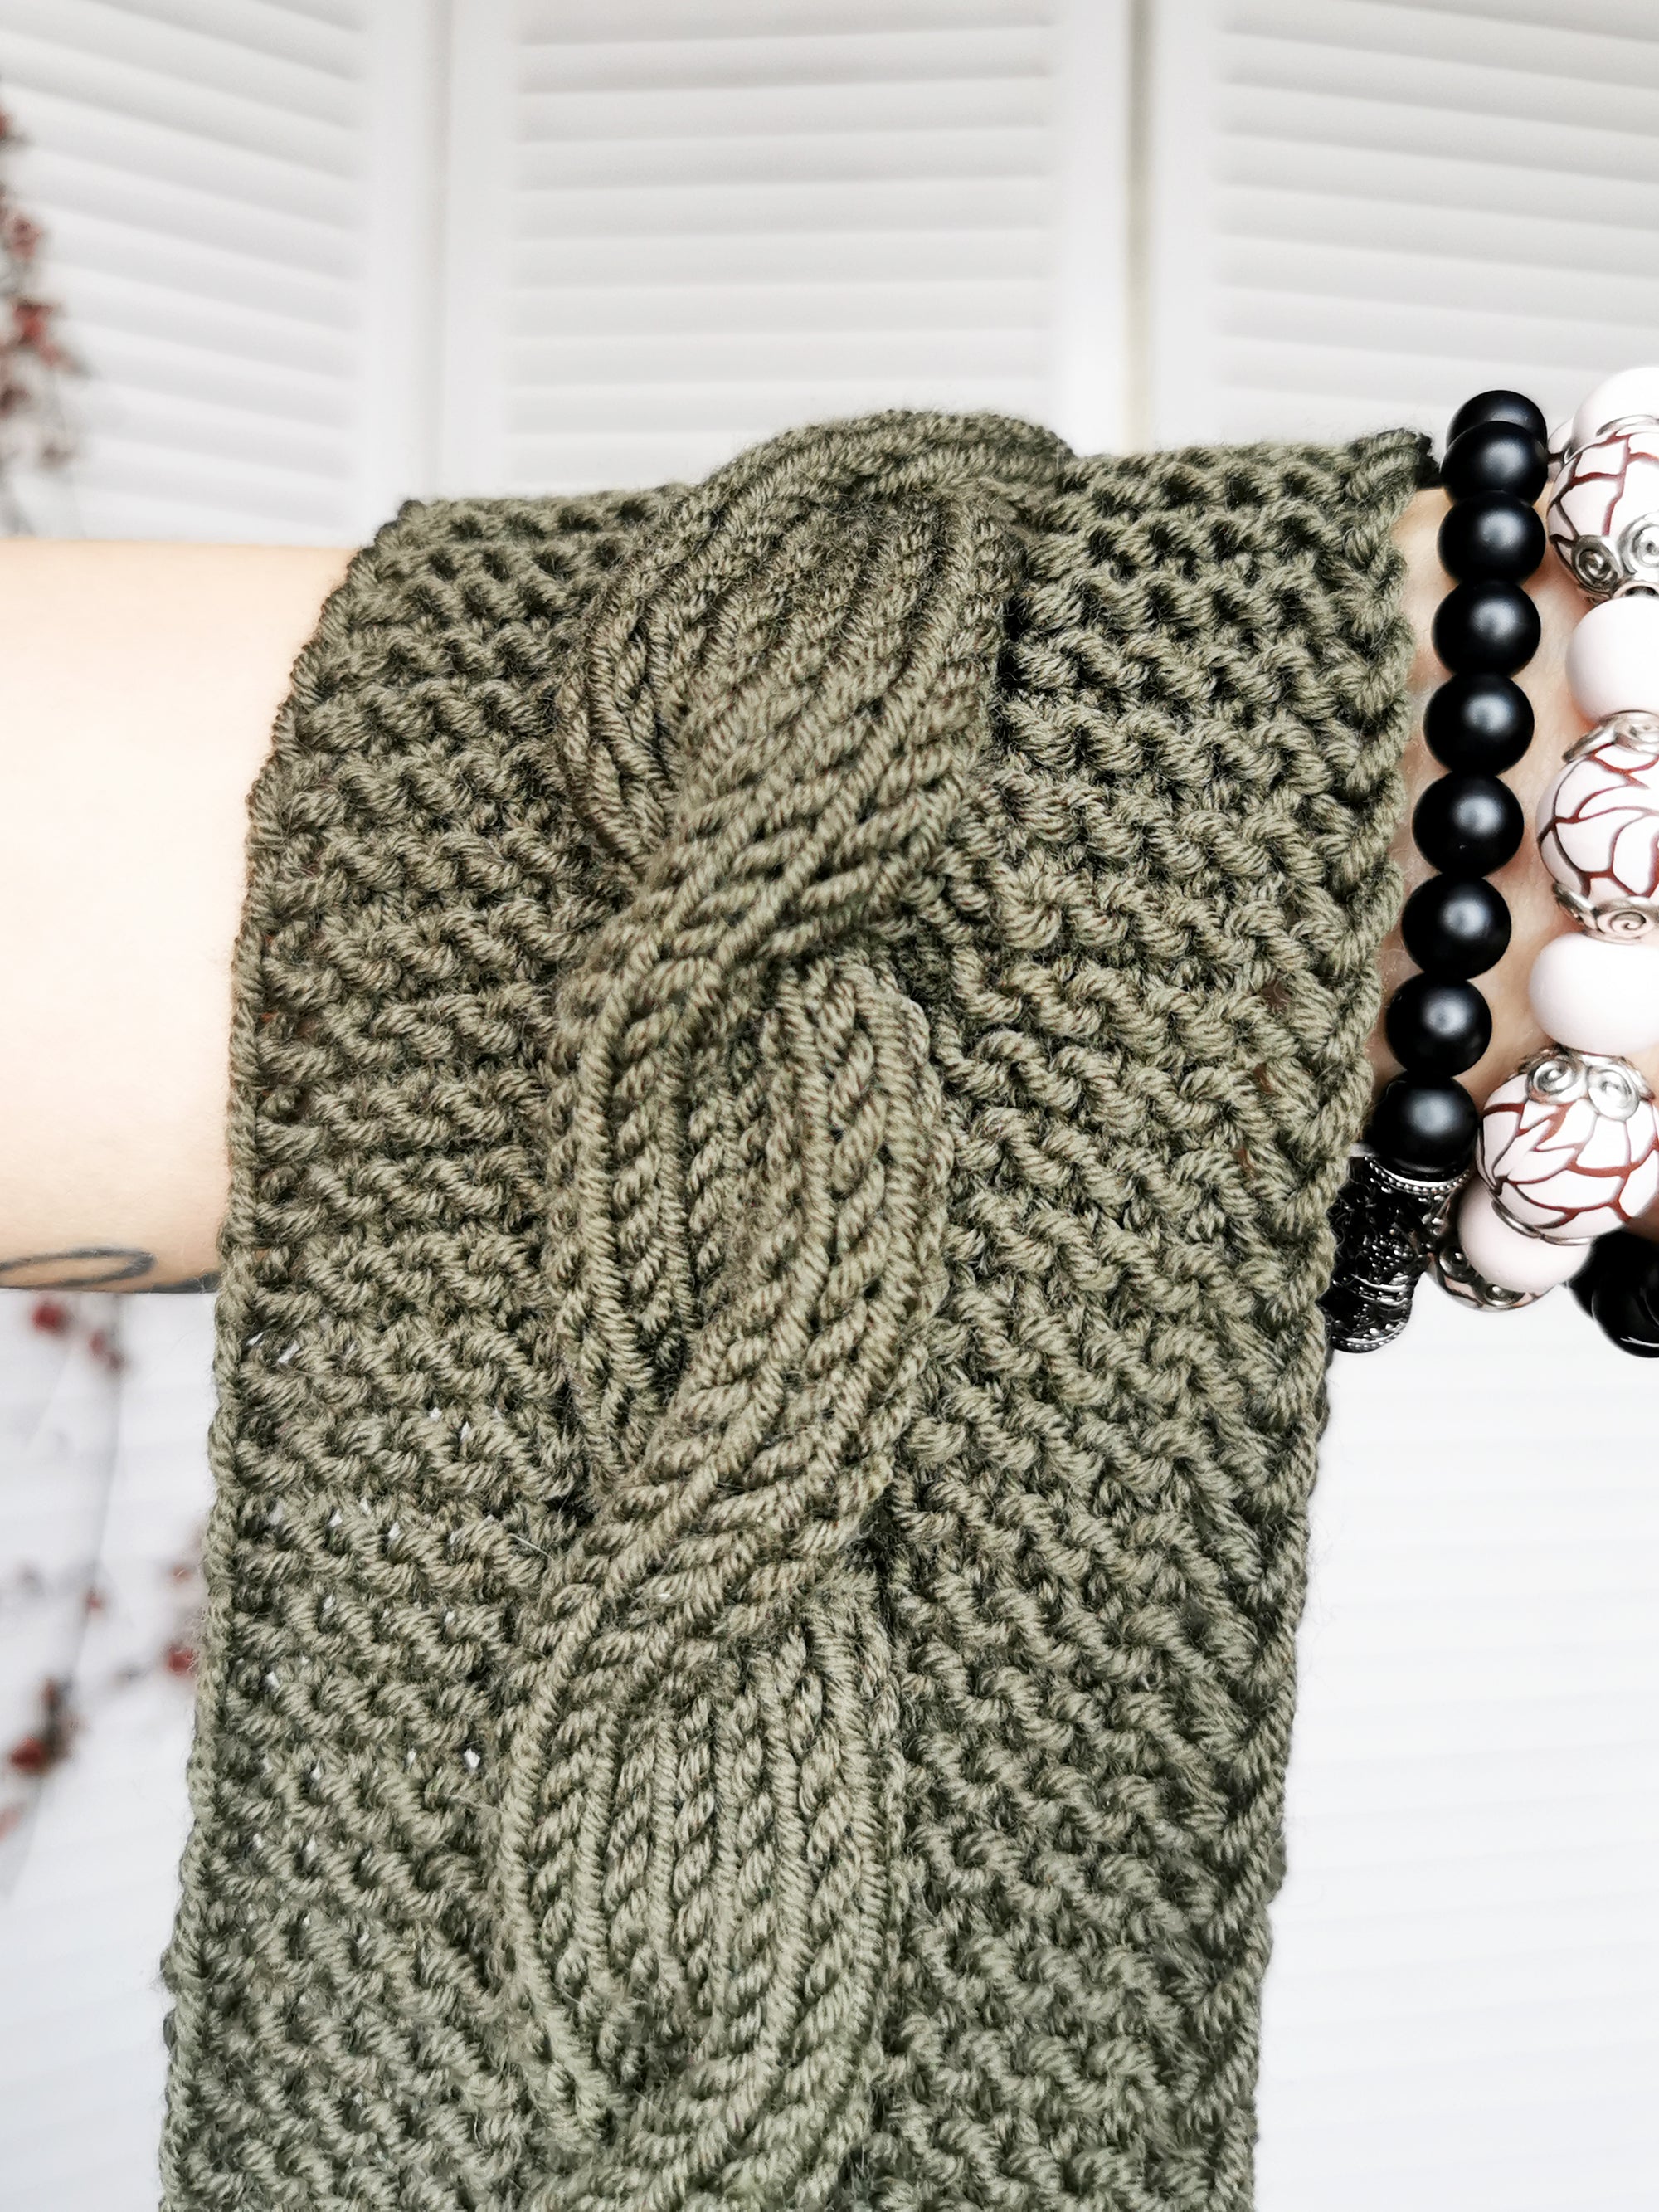 Merino wool handmade knitted winter headband in khaki green